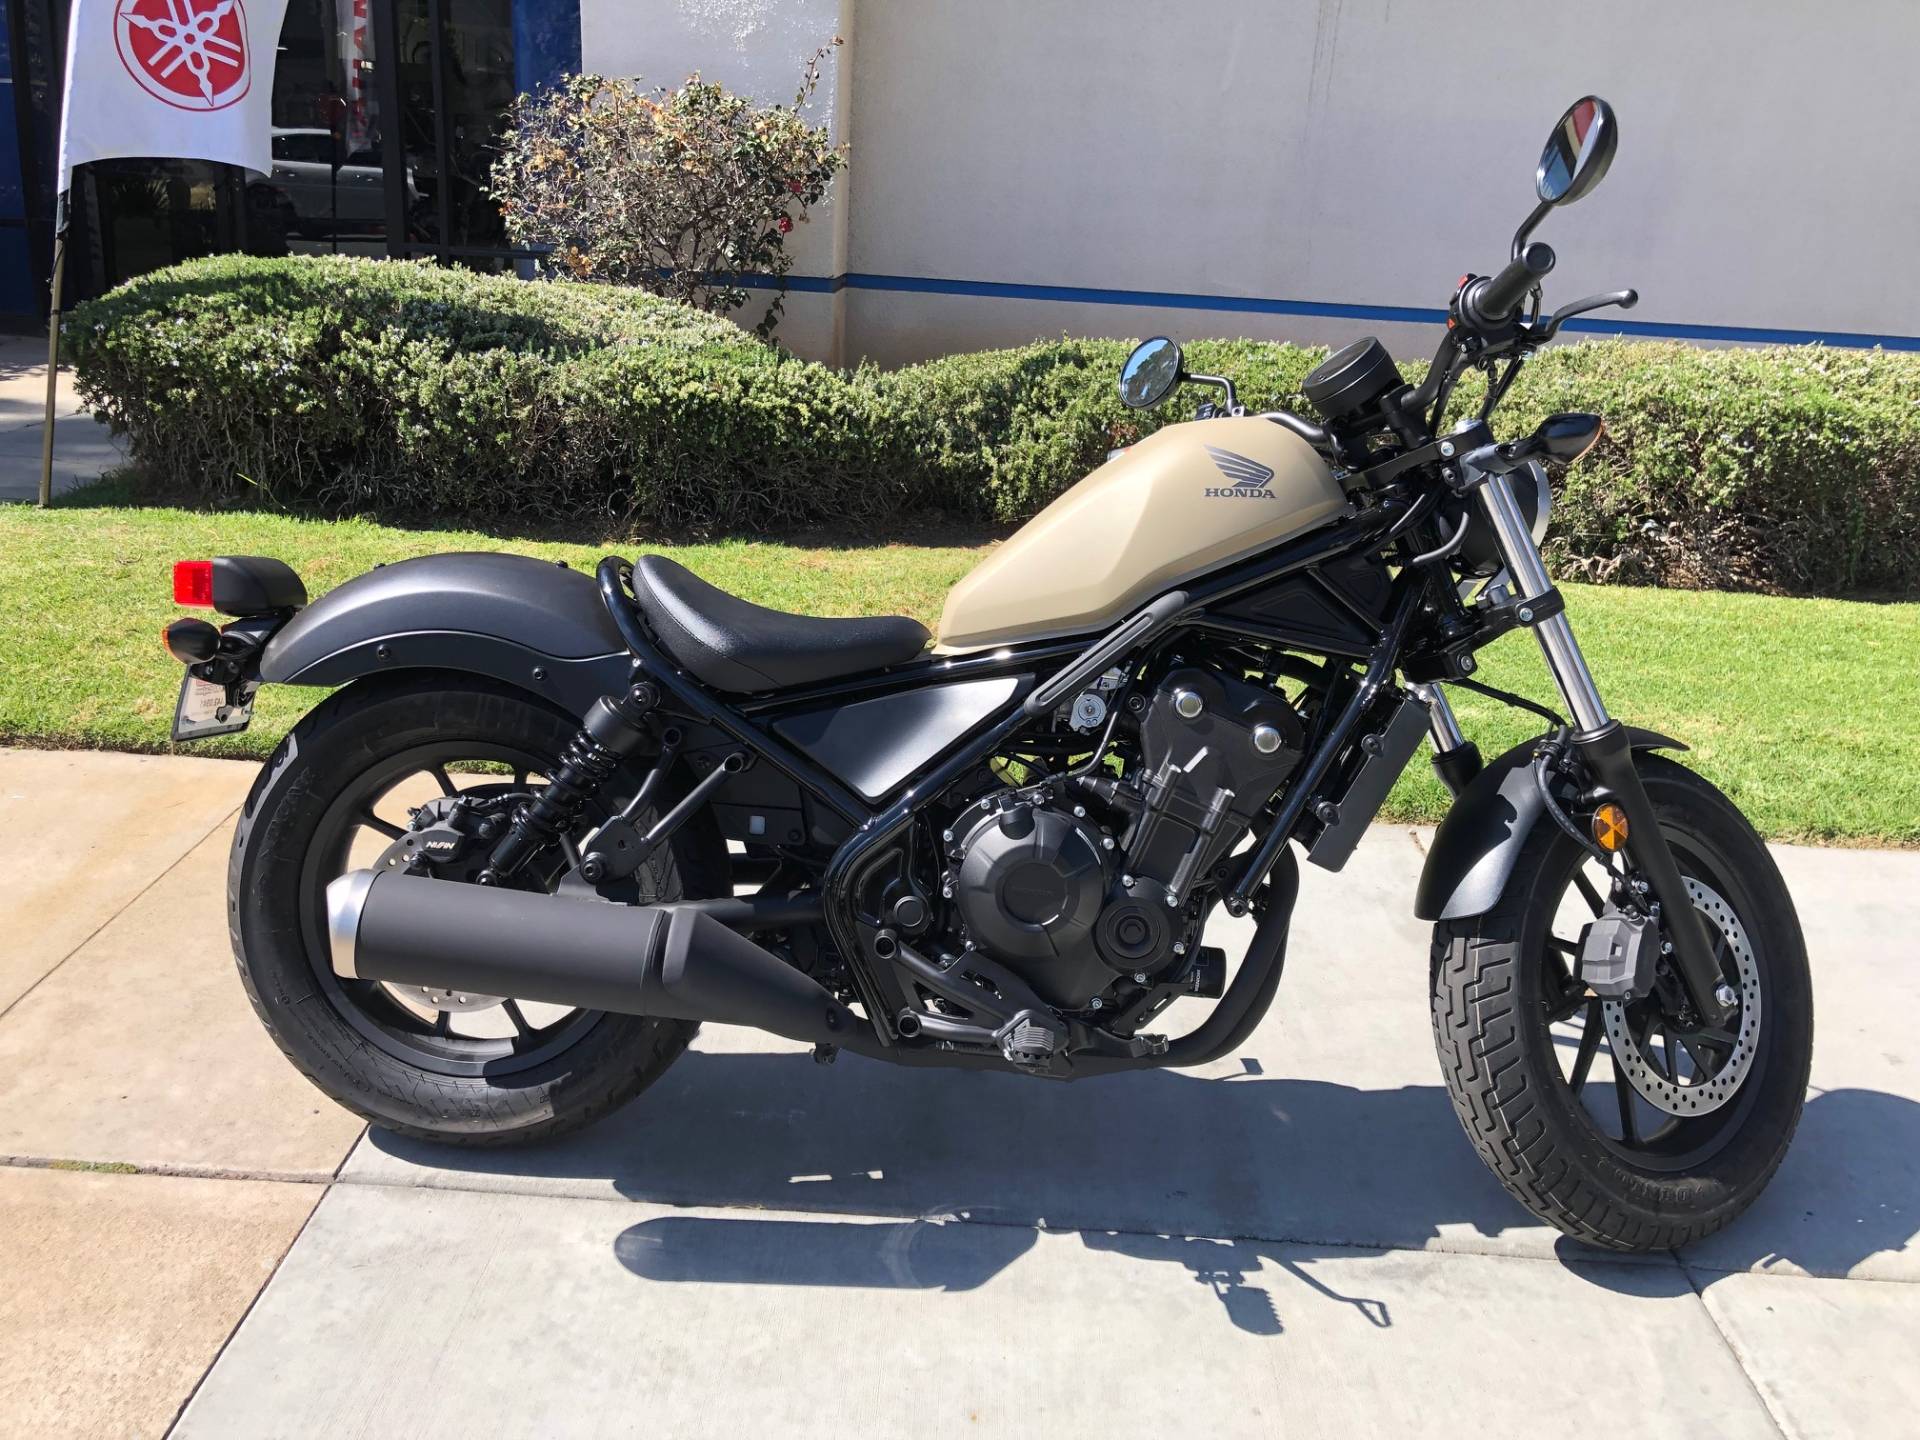 New 2019 Honda Rebel 500 ABS | Motorcycles in EL Cajon CA | N/A Matte ...